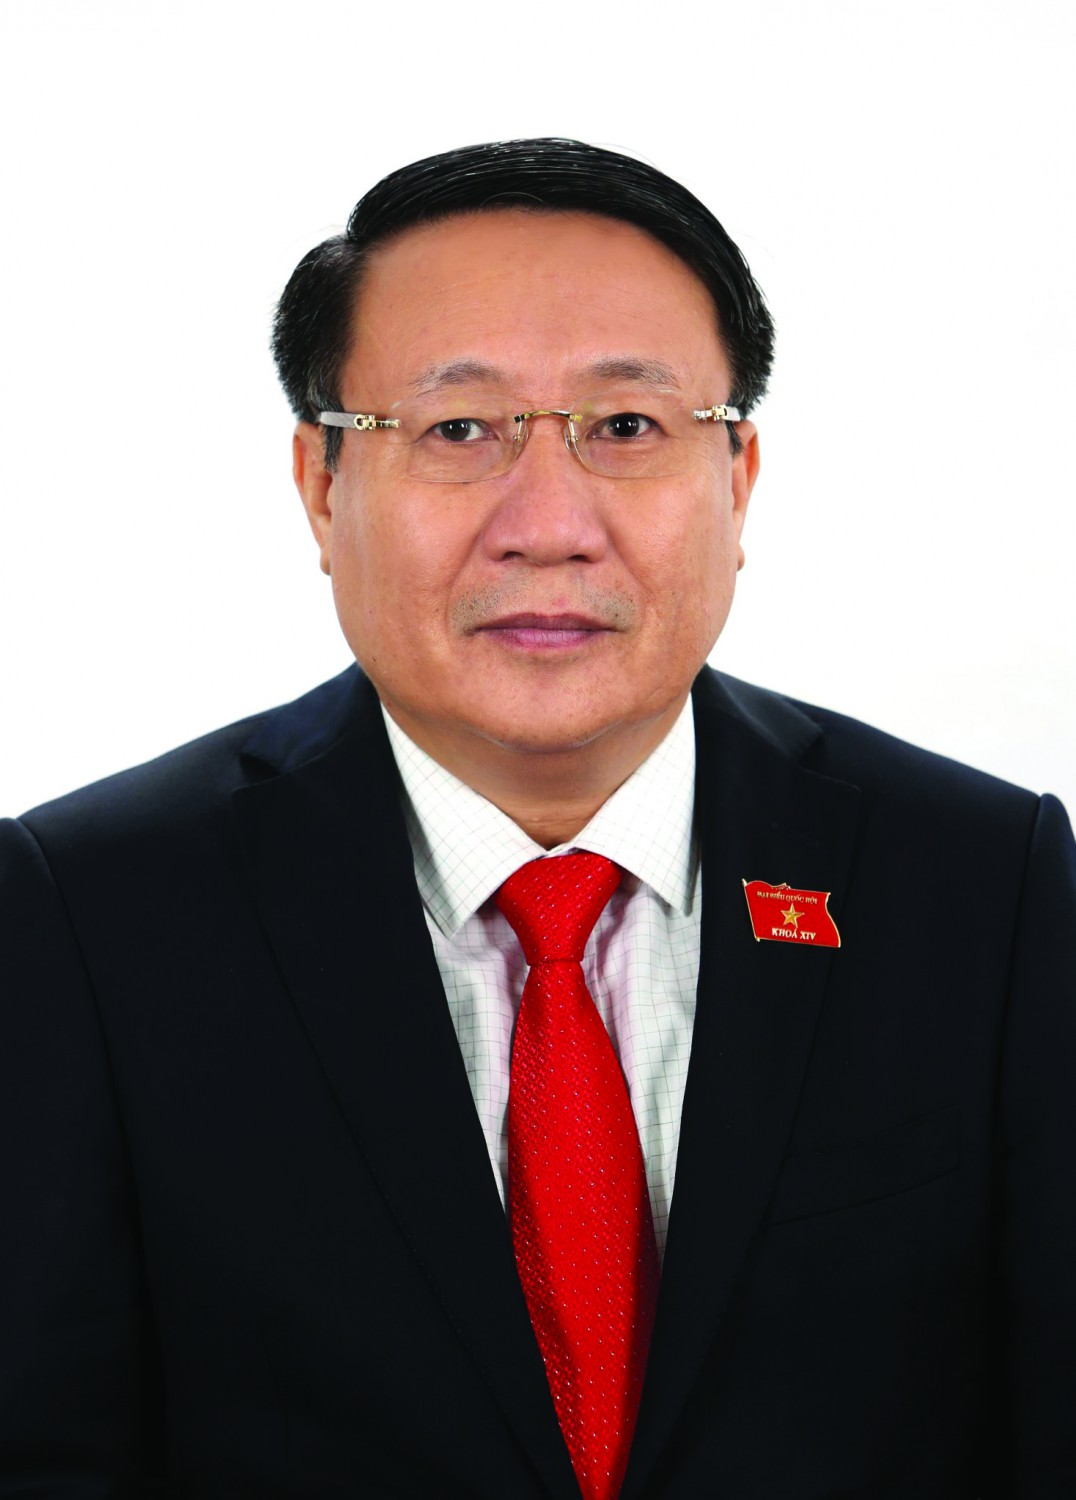 Đồng chí Hà Sỹ Đồng - Phó Chủ tịch Thường trực UBND tỉnh, Phó trưởng Ban chỉ đạo Chương trình Nông thôn mới tỉnh Quảng Trị